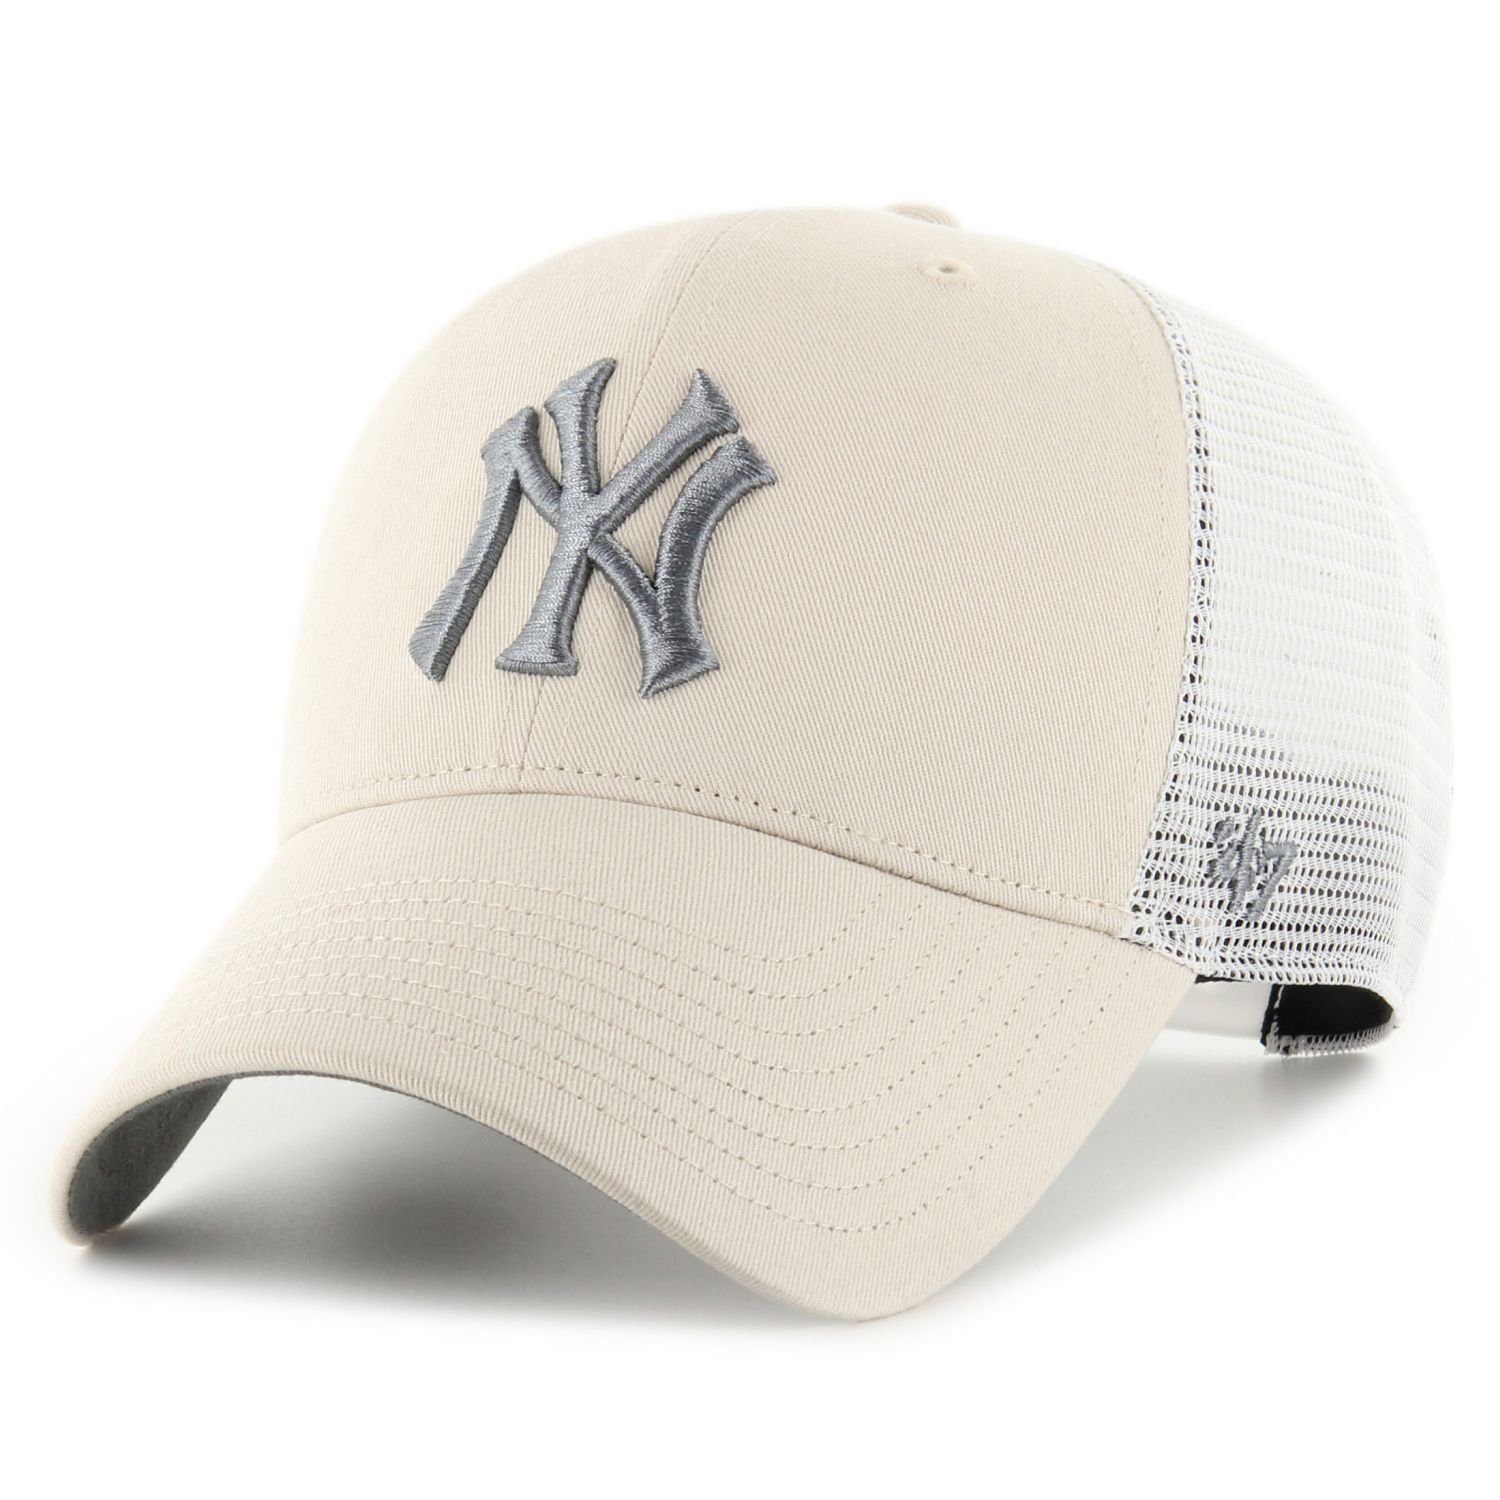 x27;47 Brand Yankees BALLPARK Cap Trucker York bone New Trucker